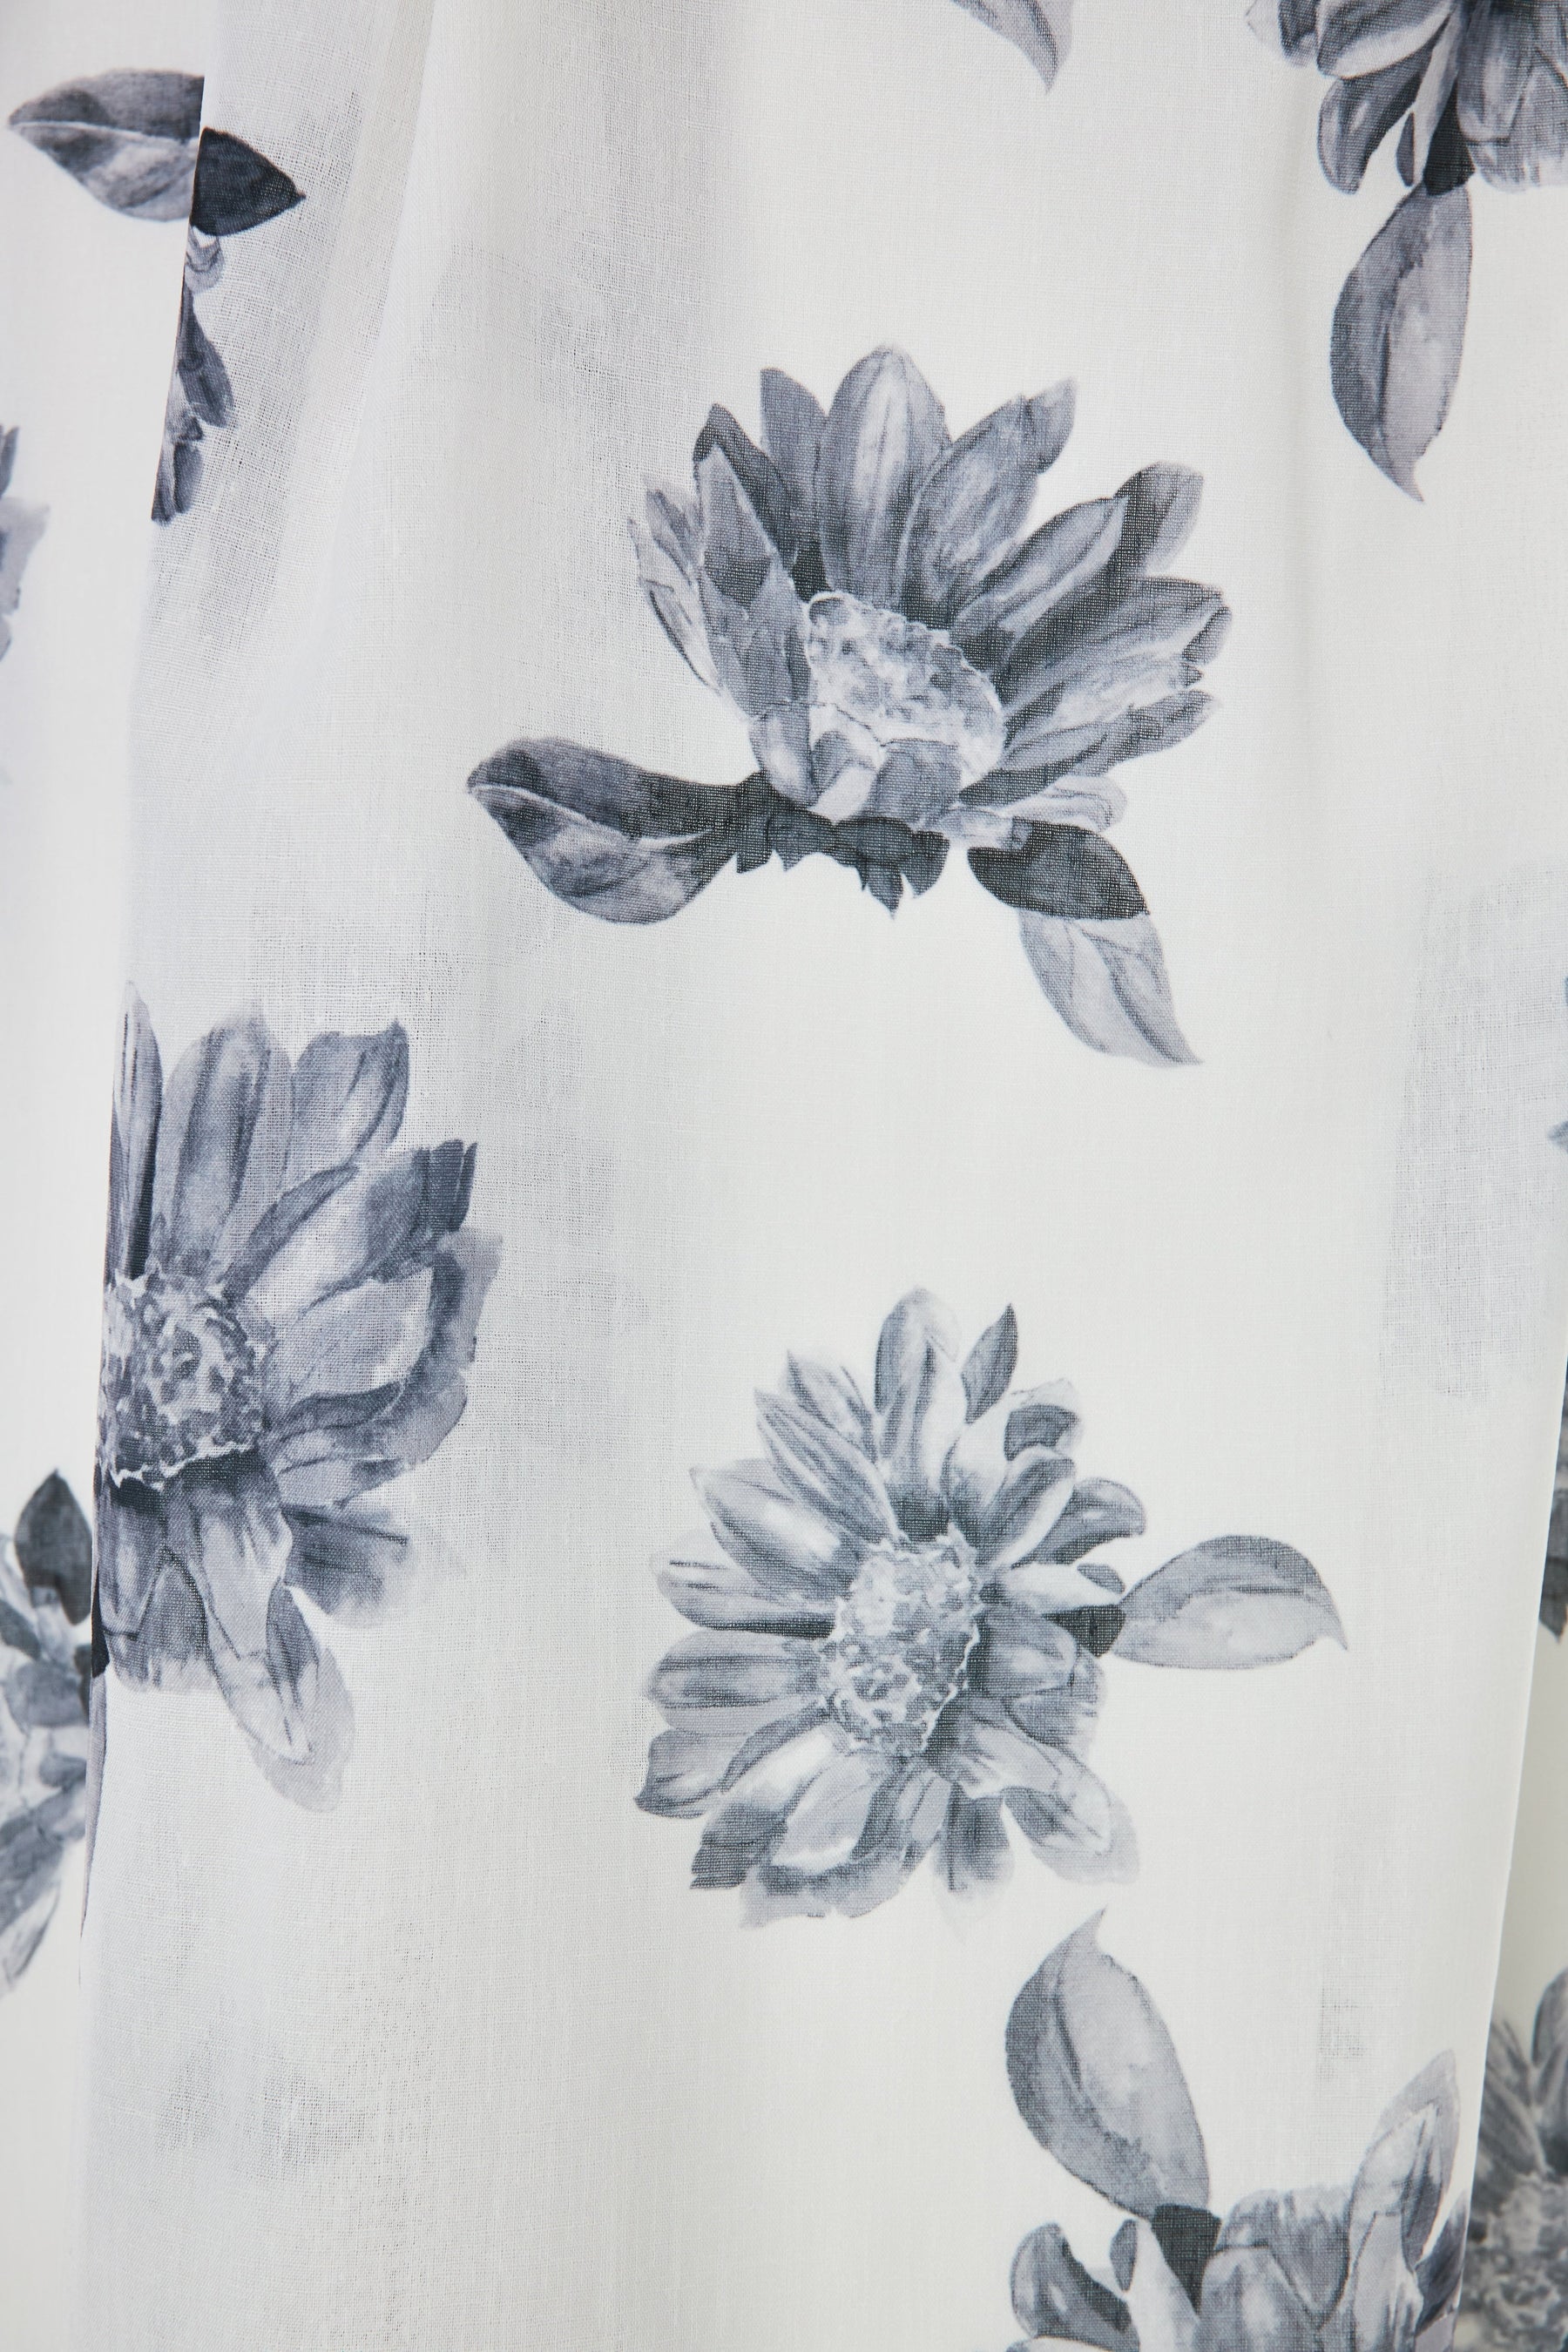 【7月中旬発送】【pearl white / sky】Sunflower-Printed Midi Dress